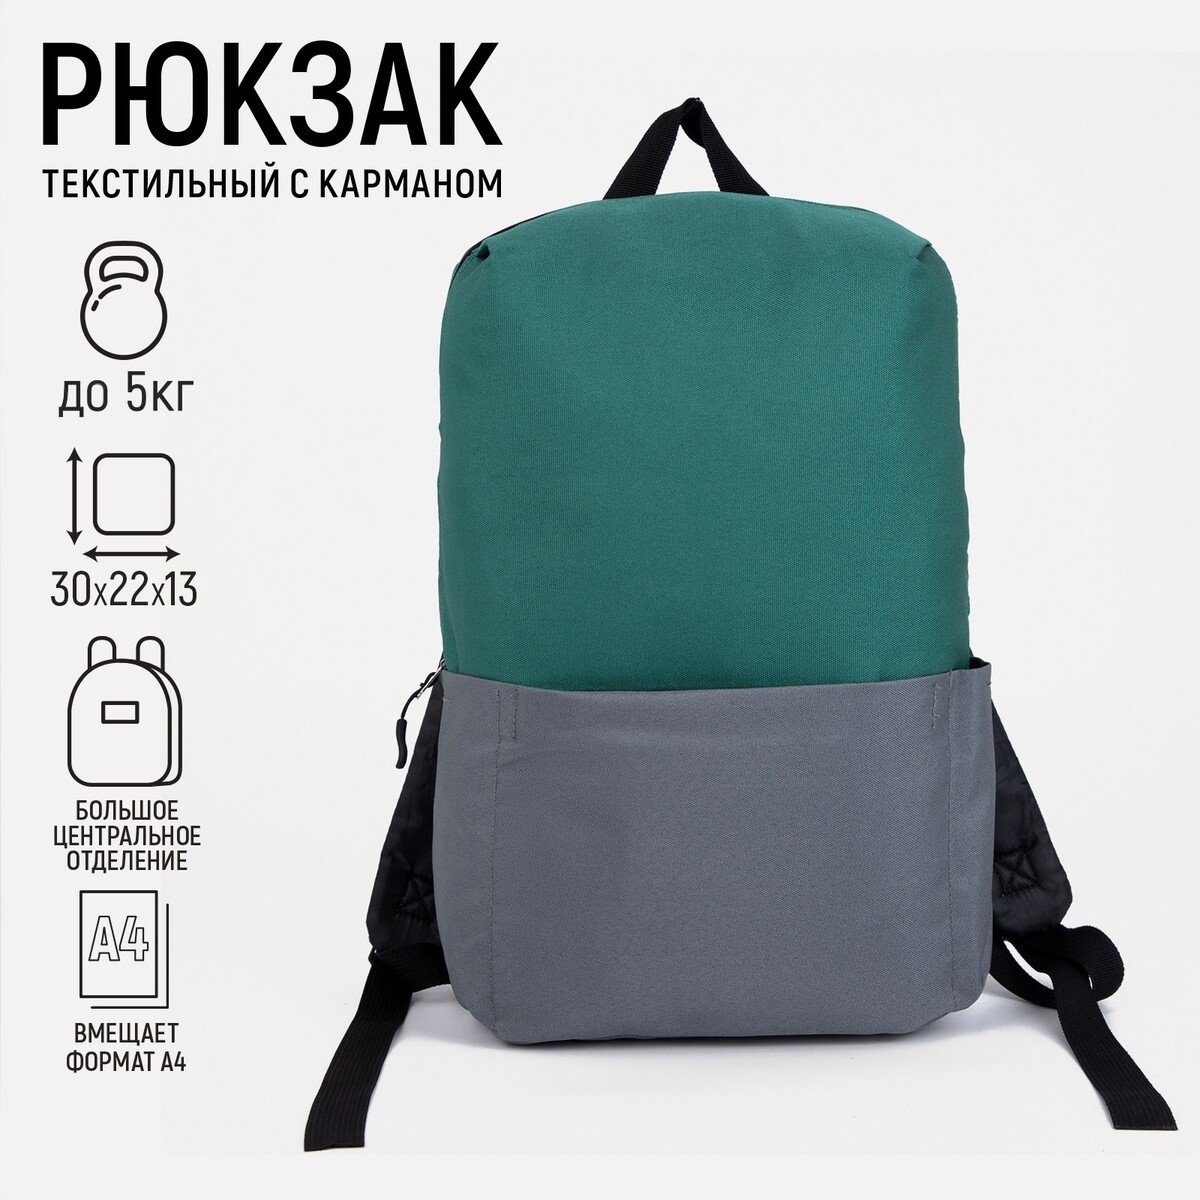 Рюкзак текстильный с карманом, серый/зеленый, 22х13х30 см рюкзак текстильный bright emotions 38 х 12 х 30 см